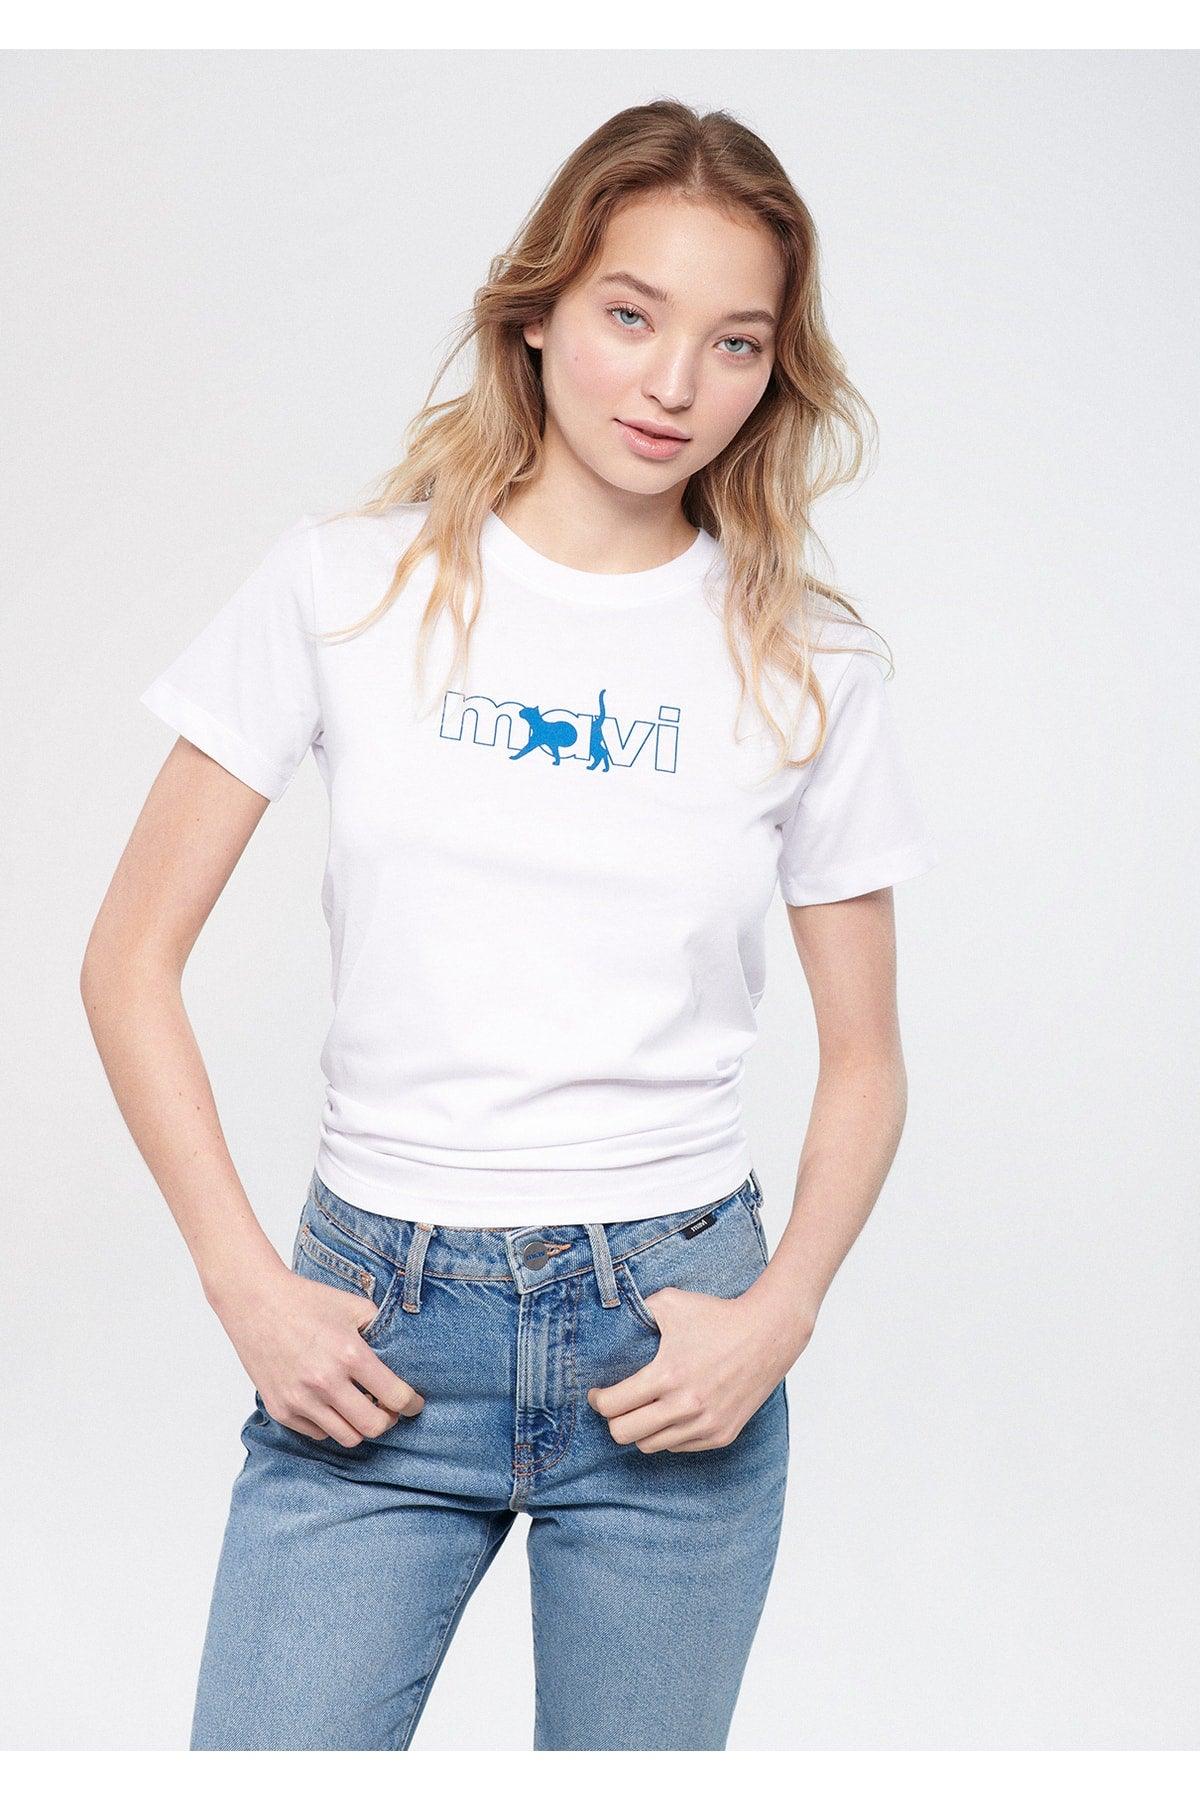 Cat Logo Printed White T-Shirt Regular Fit / Regular Fit 1611478-620 - Swordslife